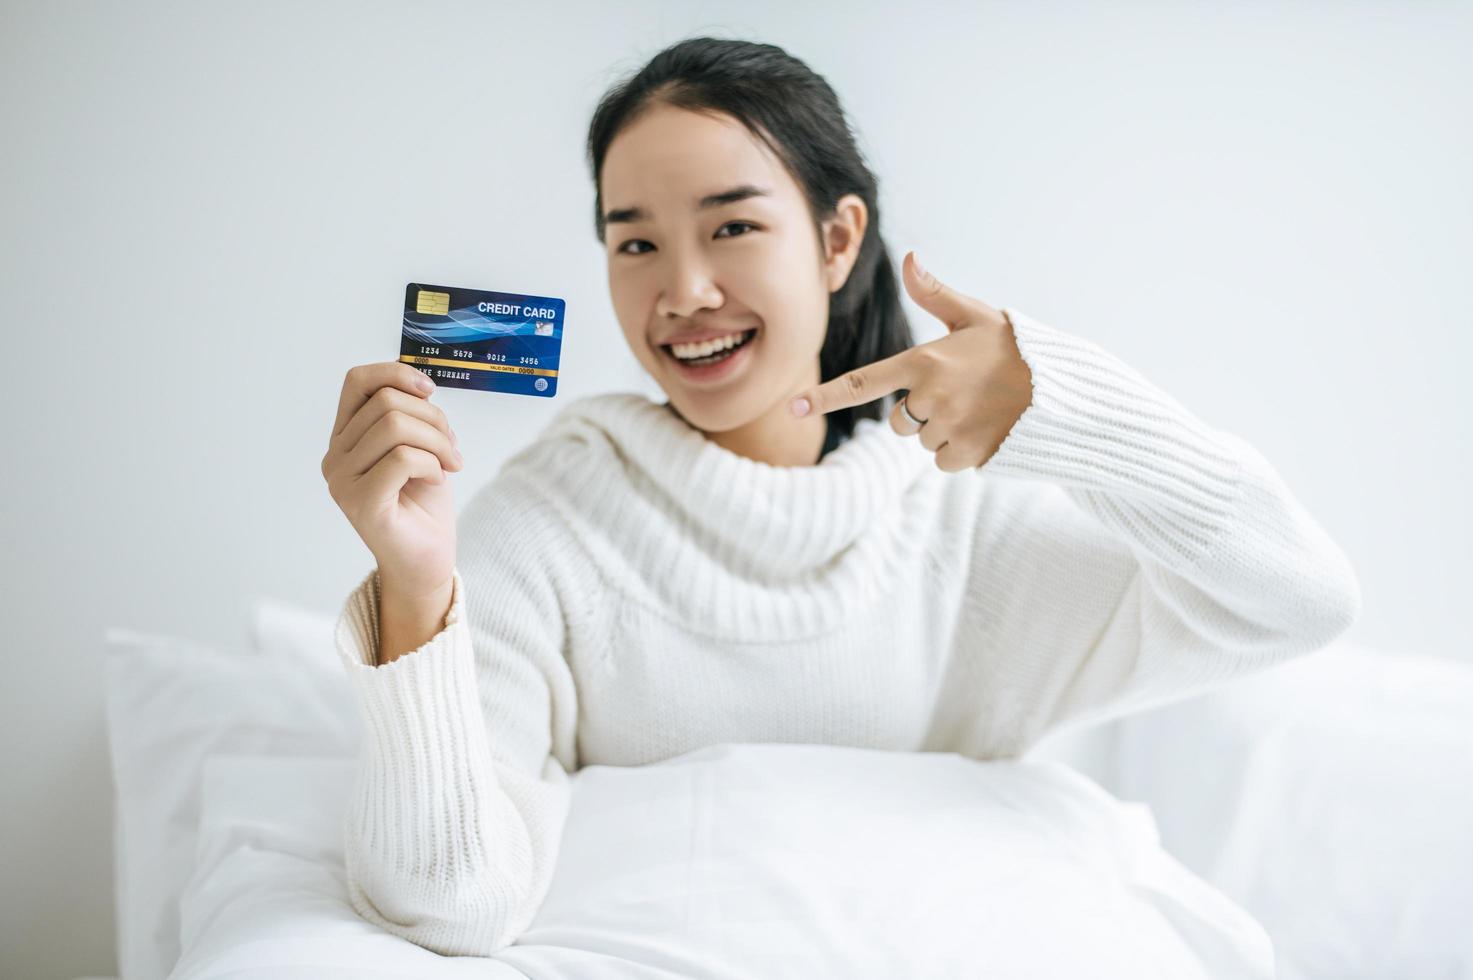 Mujer joven con una tarjeta de crédito sonriendo en la cama foto